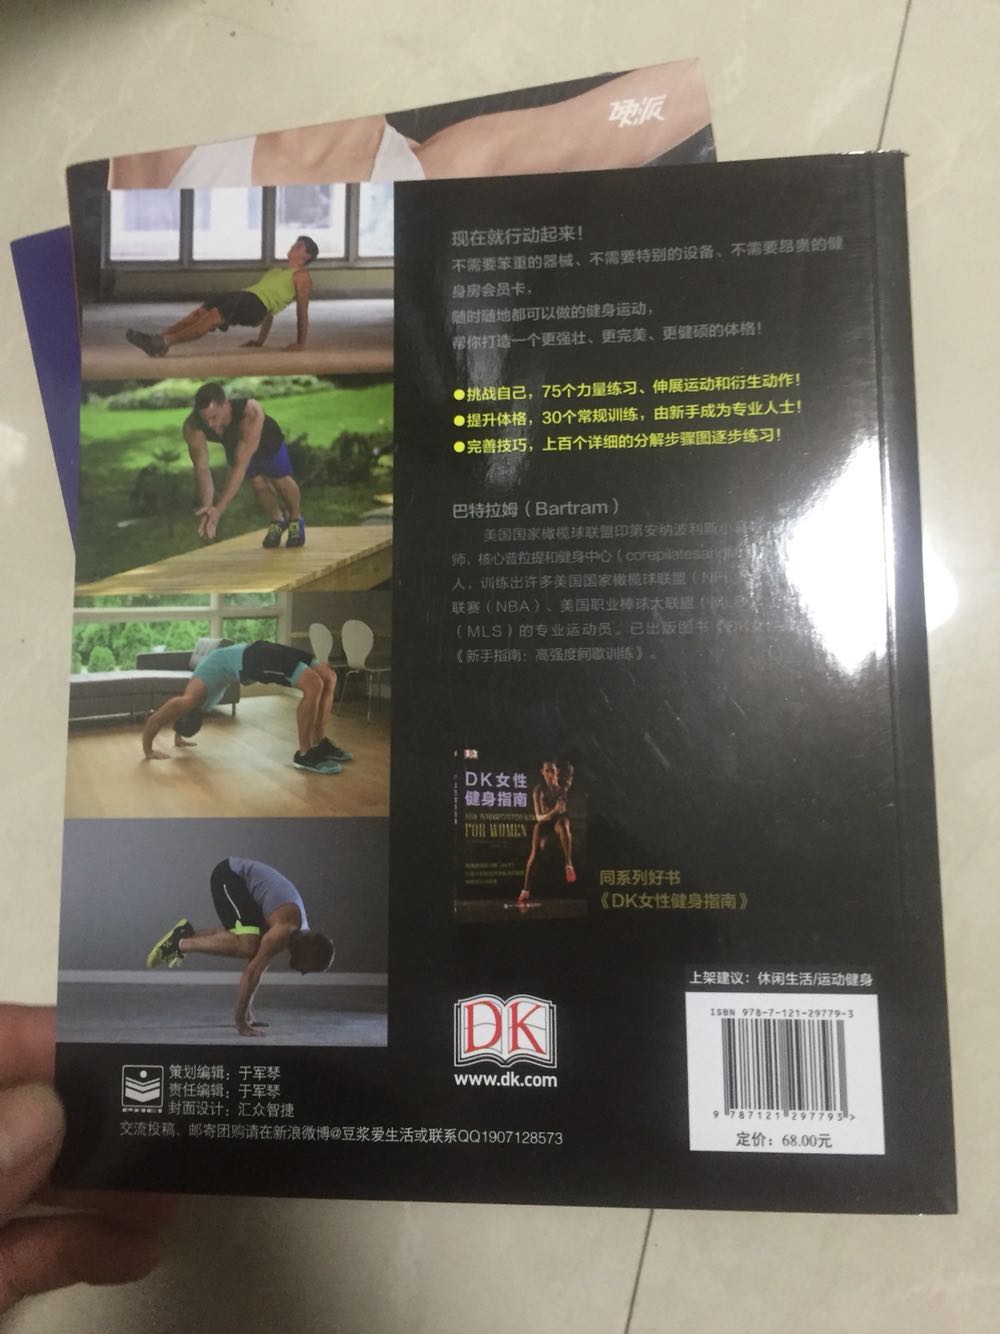 DK的书图片质量都很好，这本书基本介绍无器械健身很多，补充一下知识。